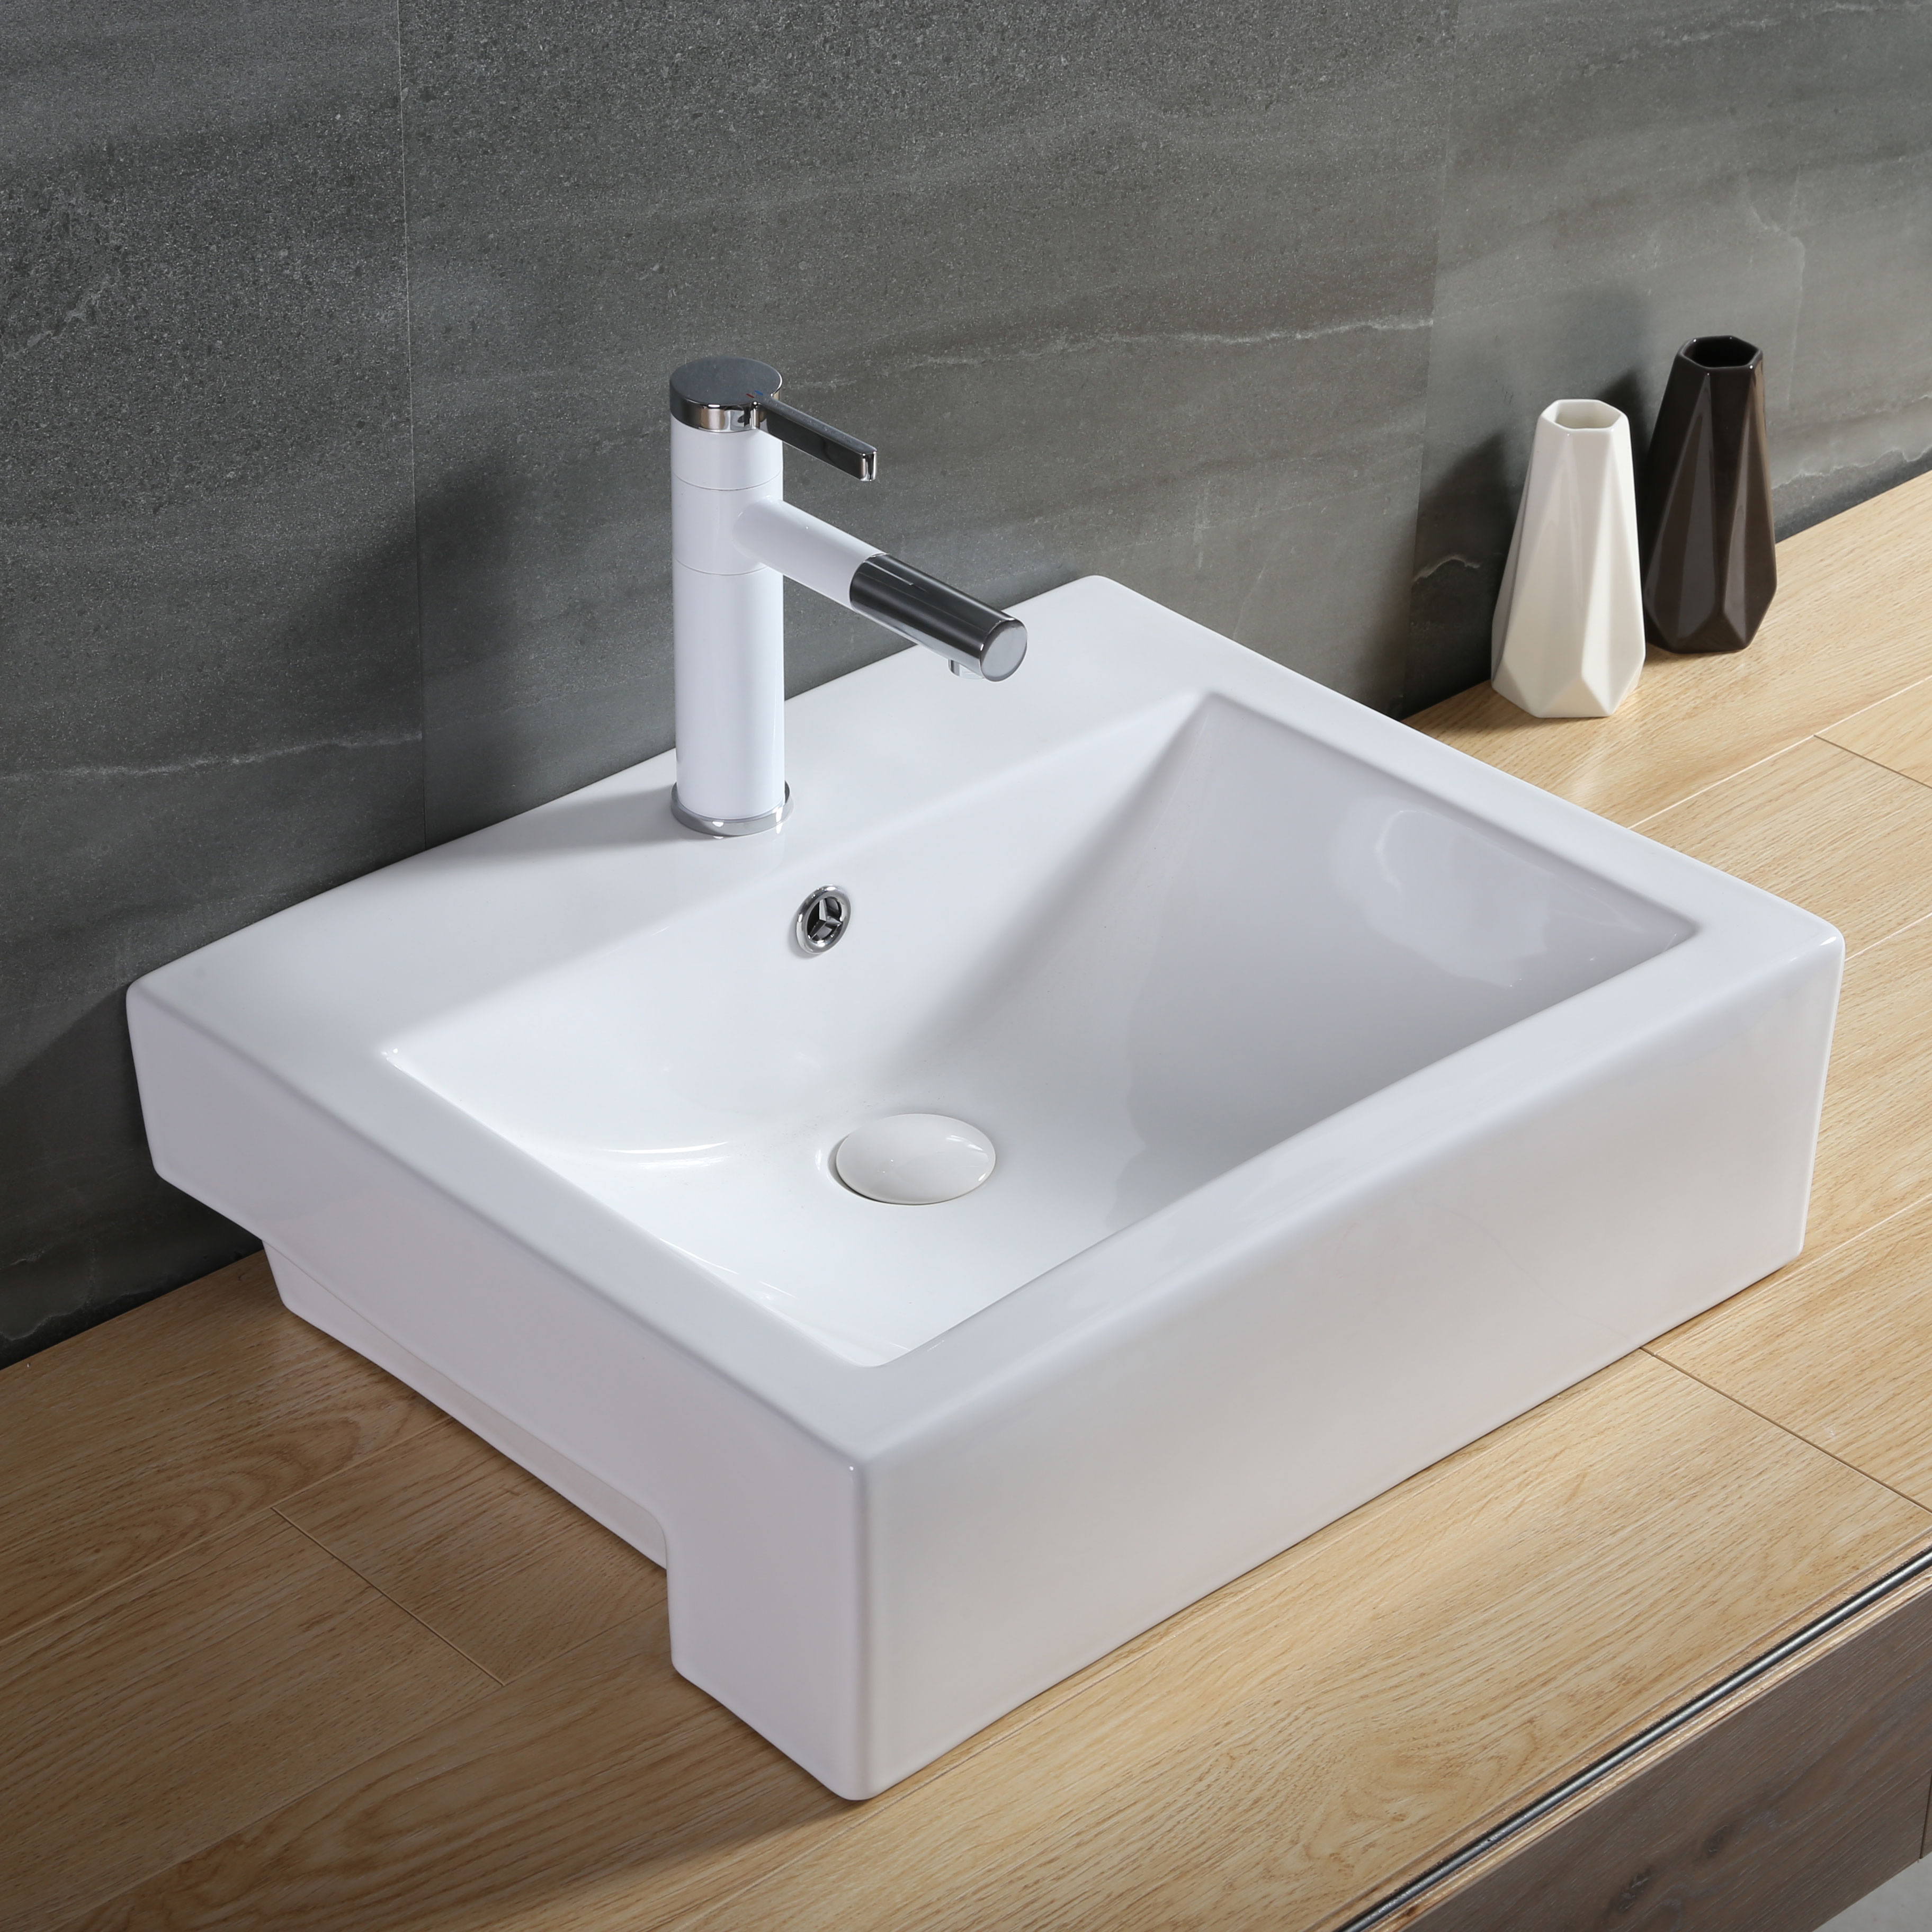 ອ່າງຊັກຜ້າສຸຂາພິບານ Semi Recessed Lavatory Basin With Faucet Hole Ceramic Sink